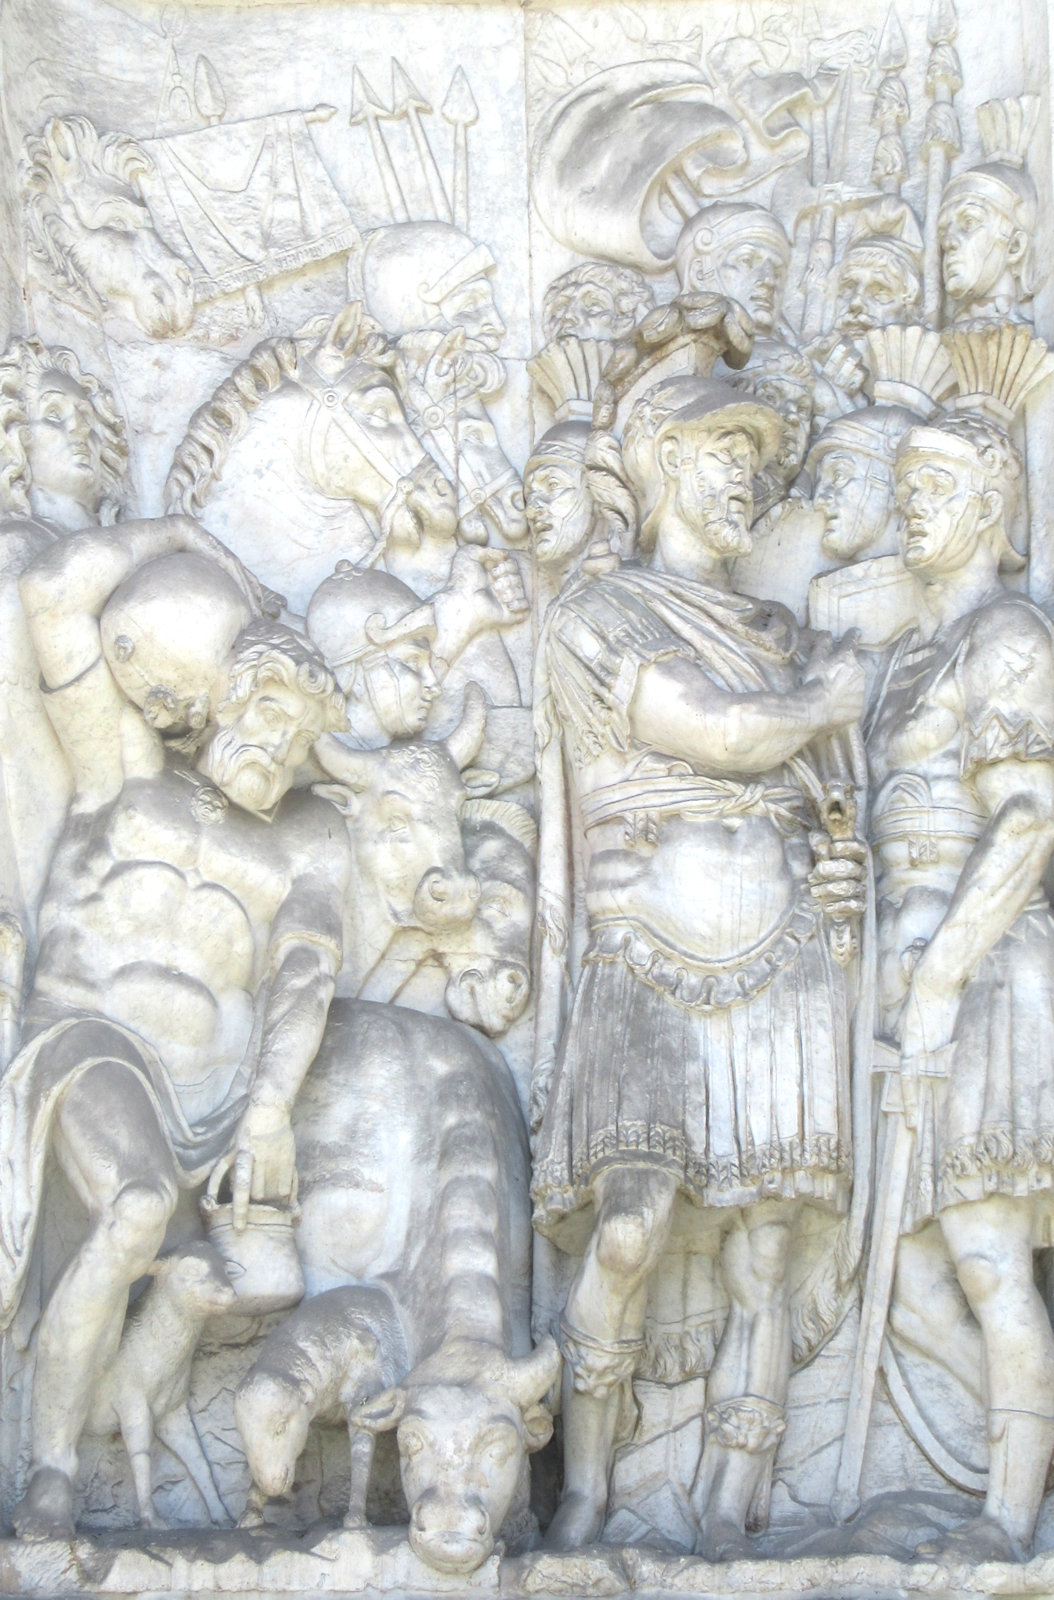 Flaminio Vacca: Josua führt die Israeliten über den Jordan, 1587, Relief an der Fontana dell'Arco Felice in Rom